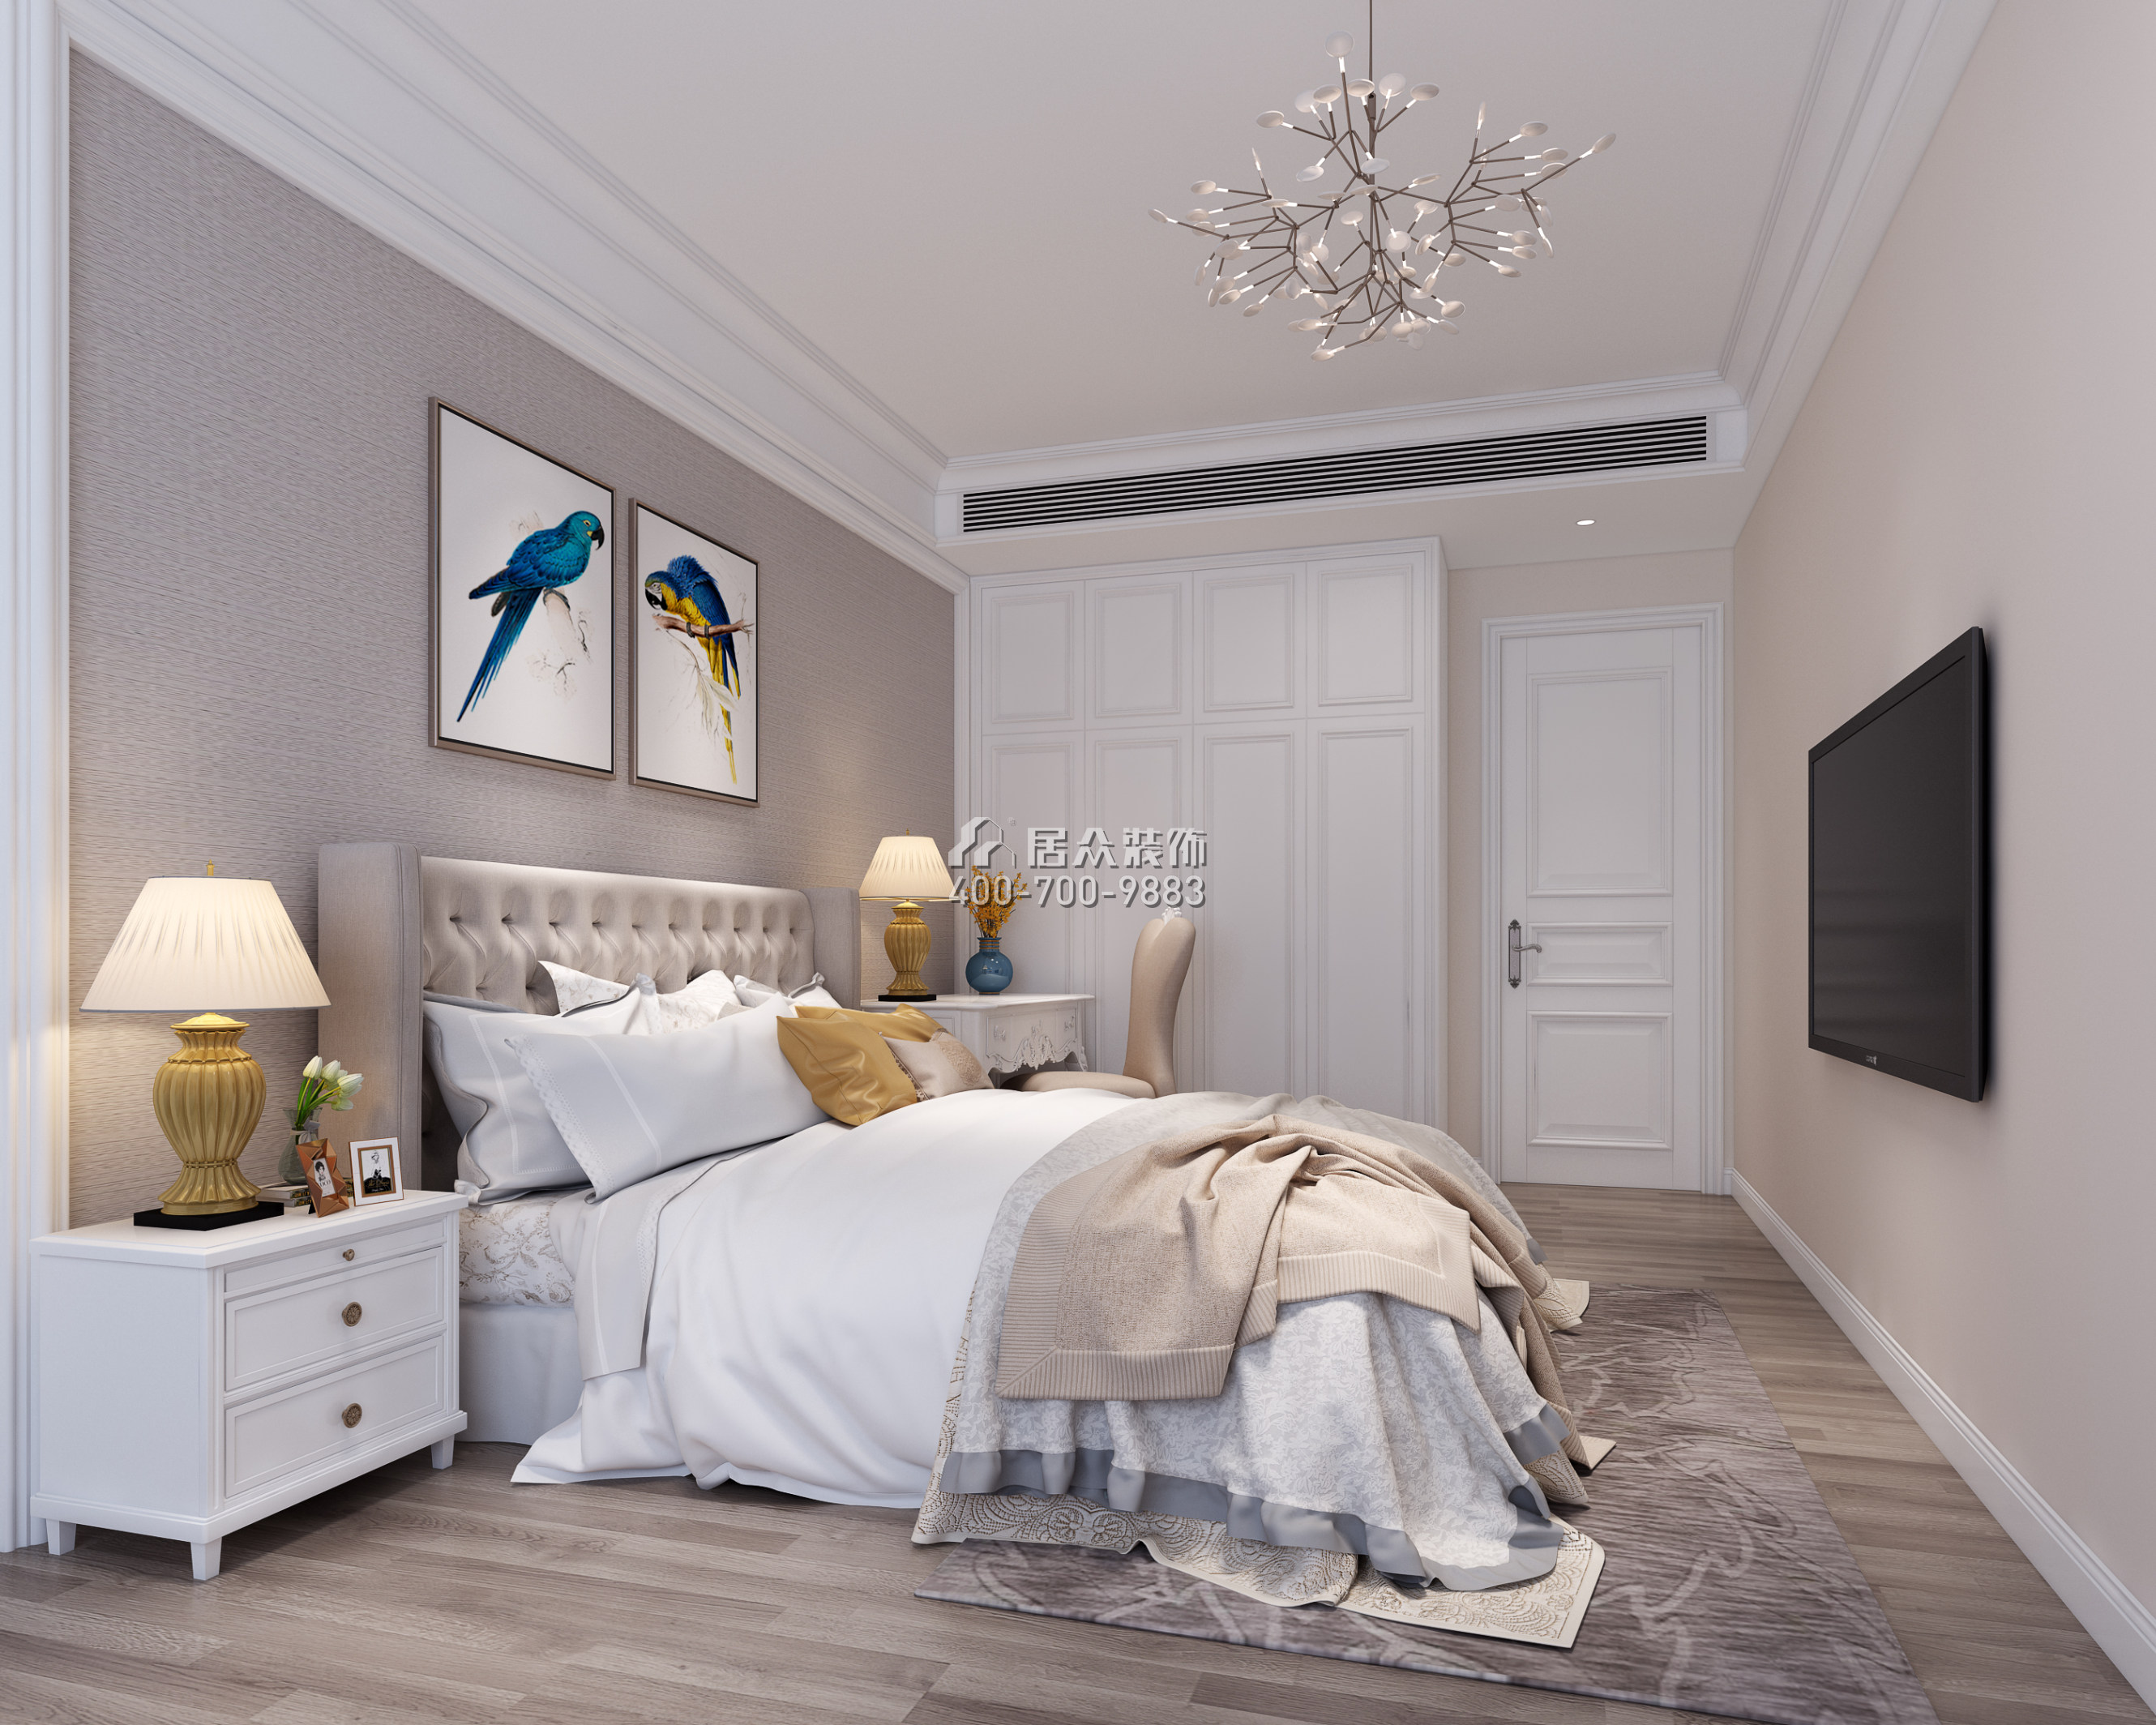 华润城一期100平方米欧式风格平层户型卧室装修效果图